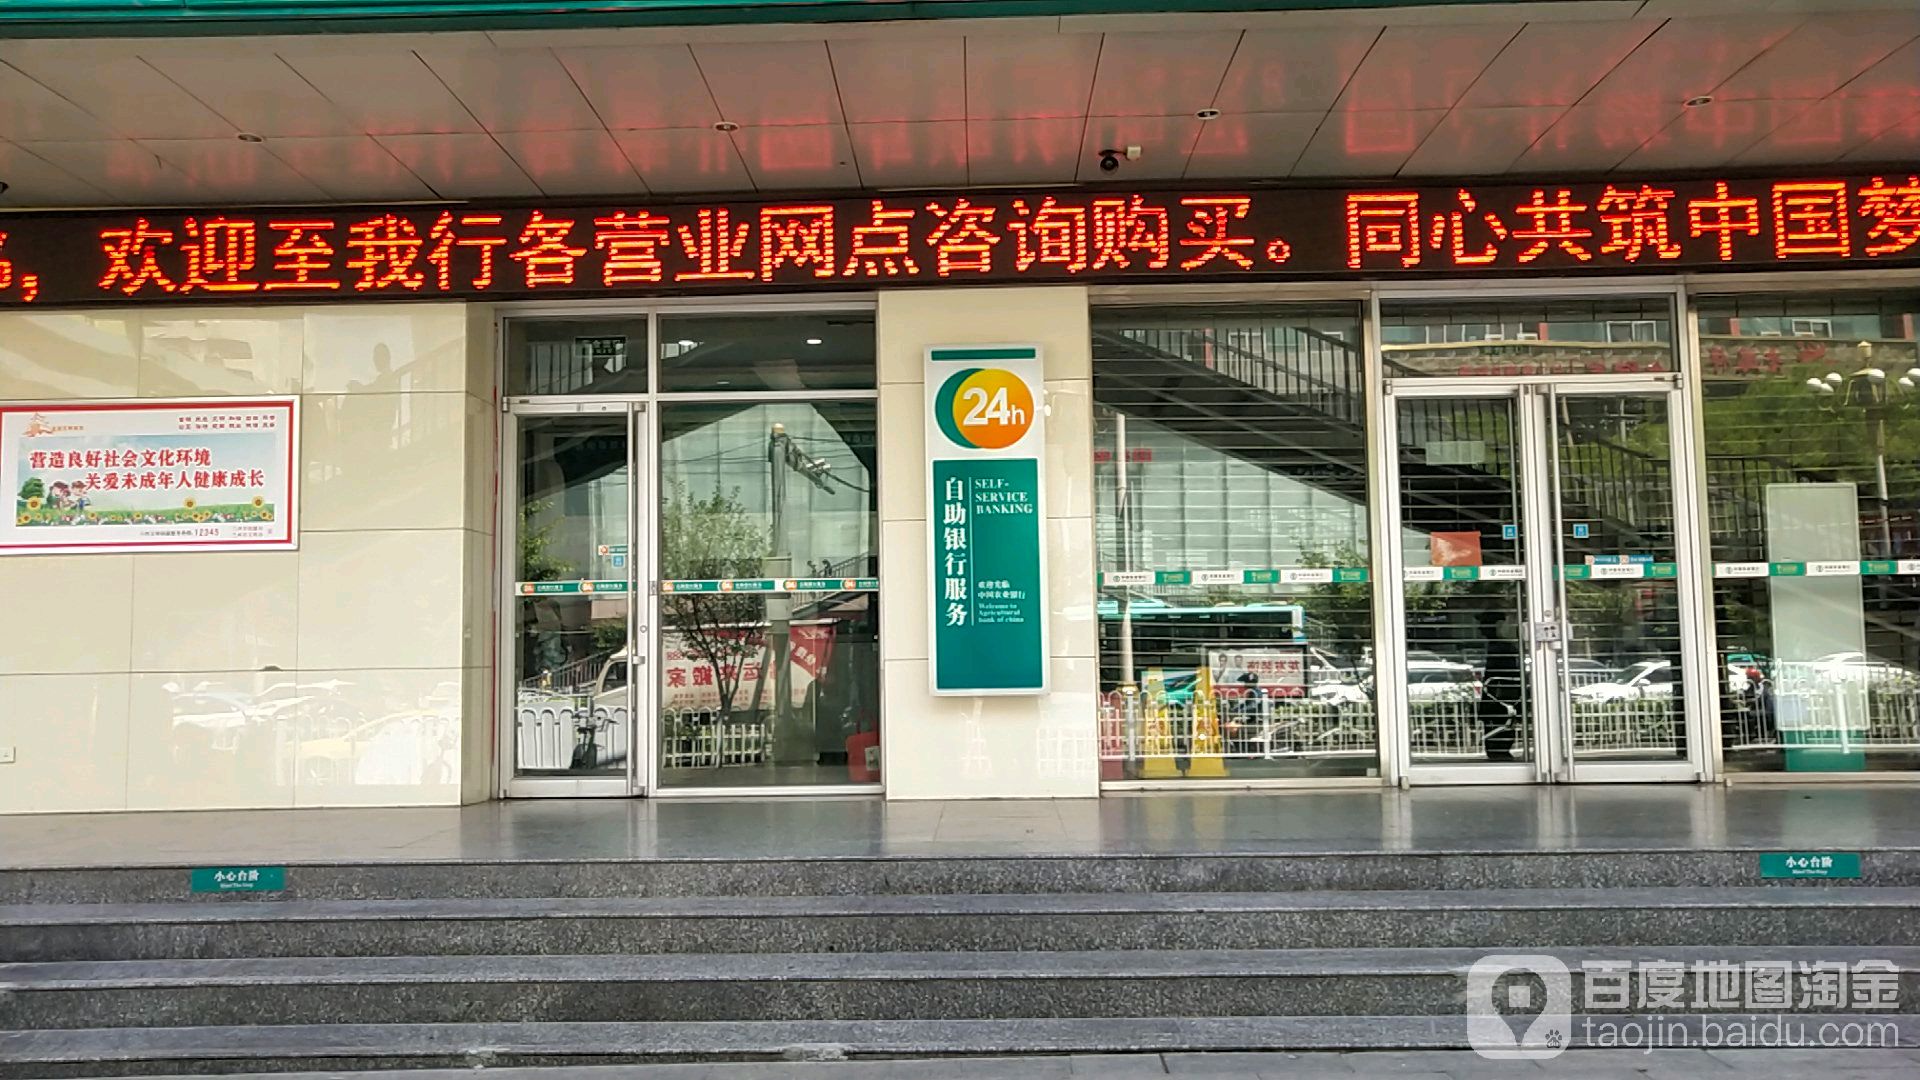 中國農業銀行24小時自助銀行(慶陽路店)